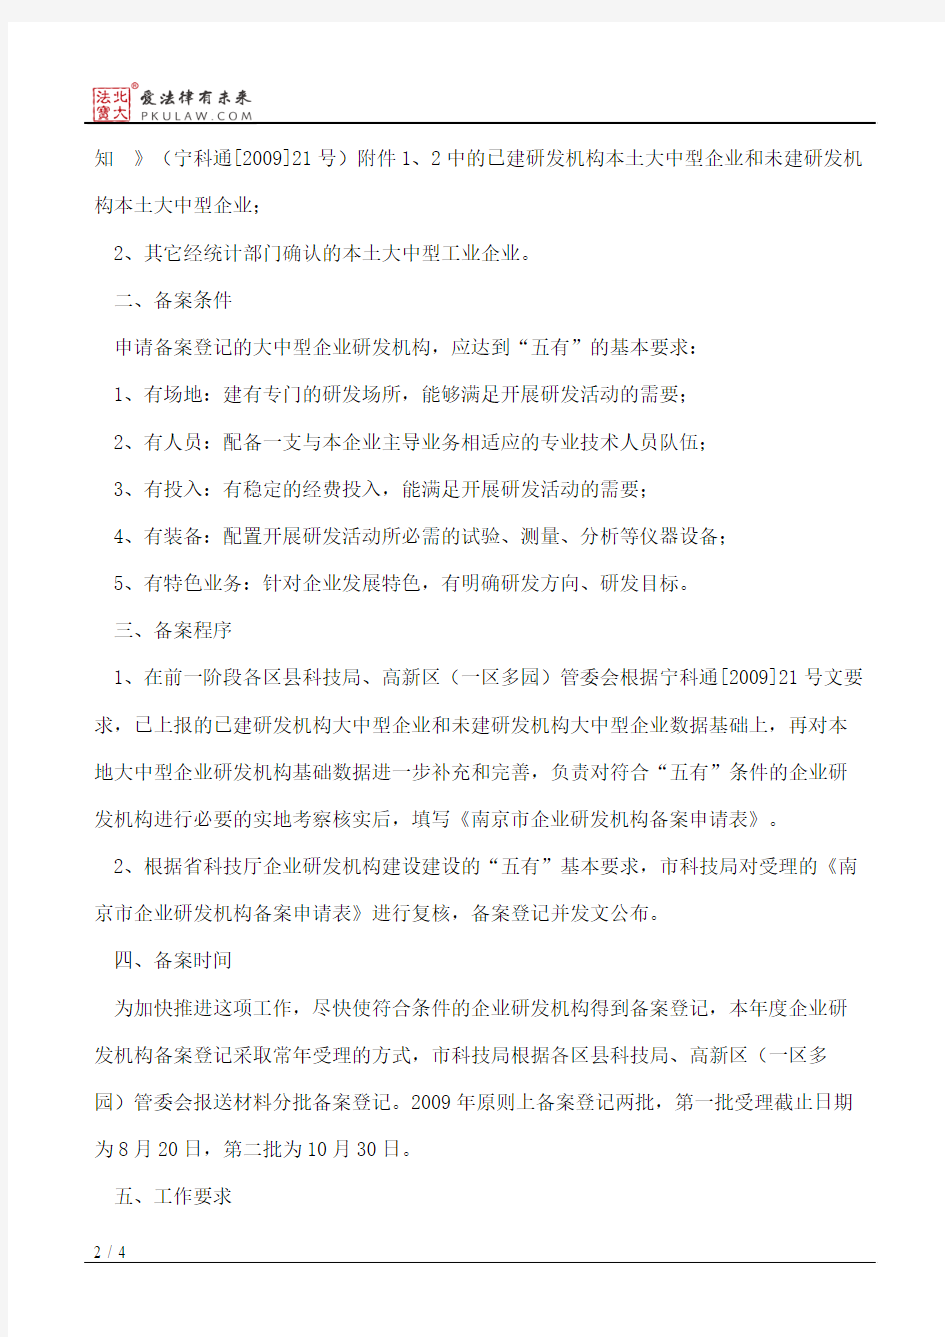 南京市科学技术局关于开展大中型企业研发机构备案登记的通知